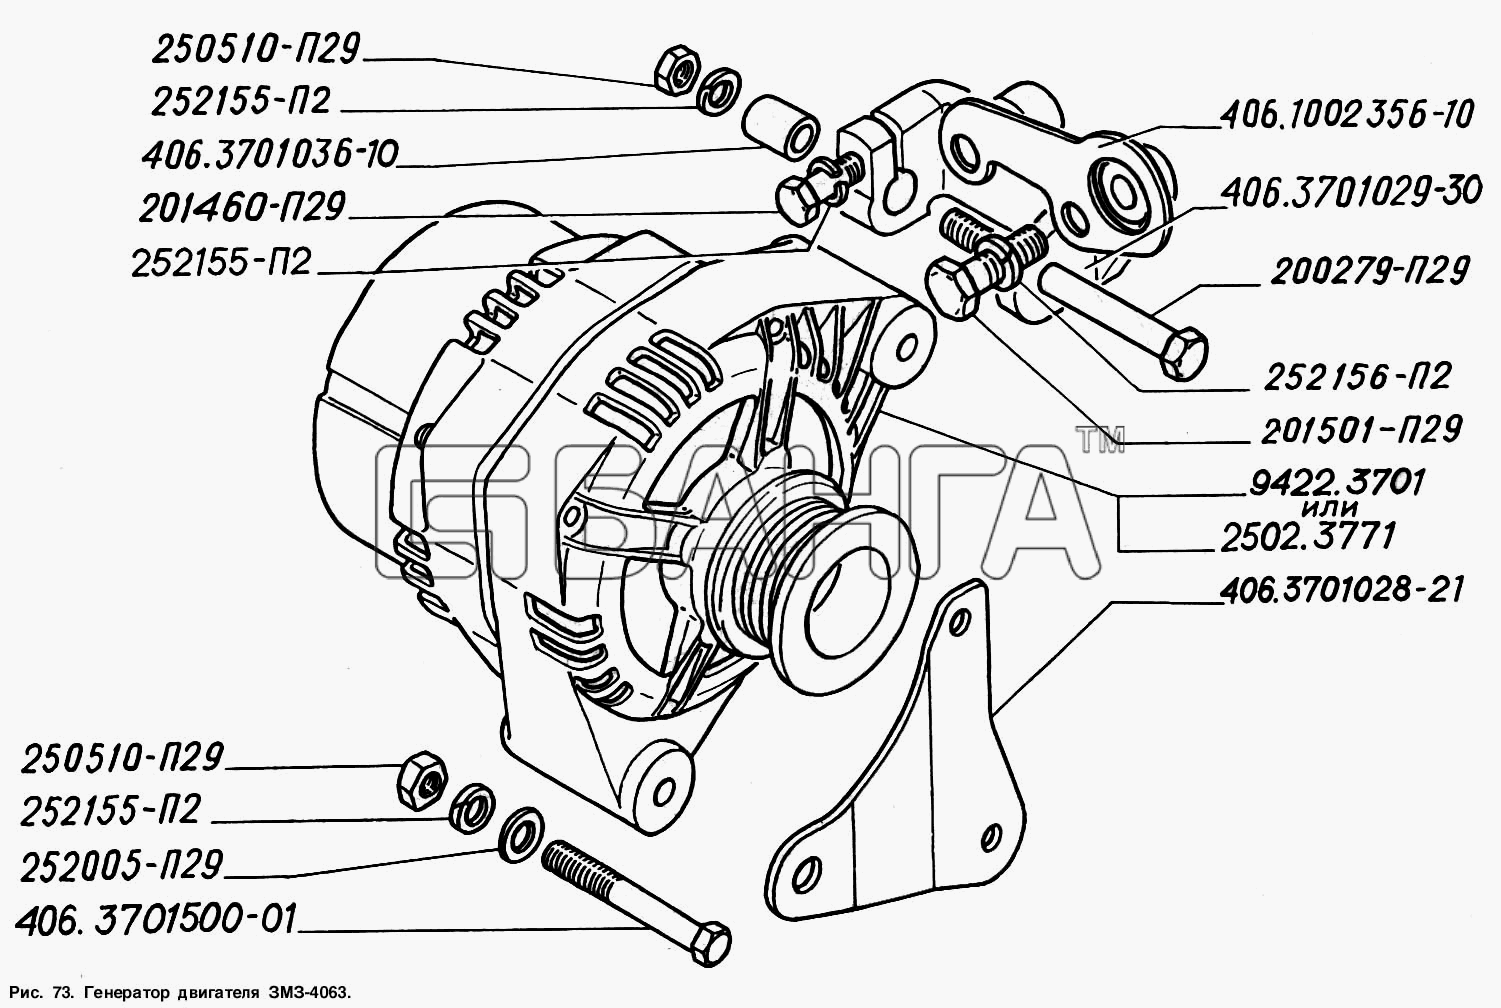 ГАЗ ГАЗ-2217 (Соболь) Схема Генератор двигателя ЗМЗ-4063-149 banga.ua